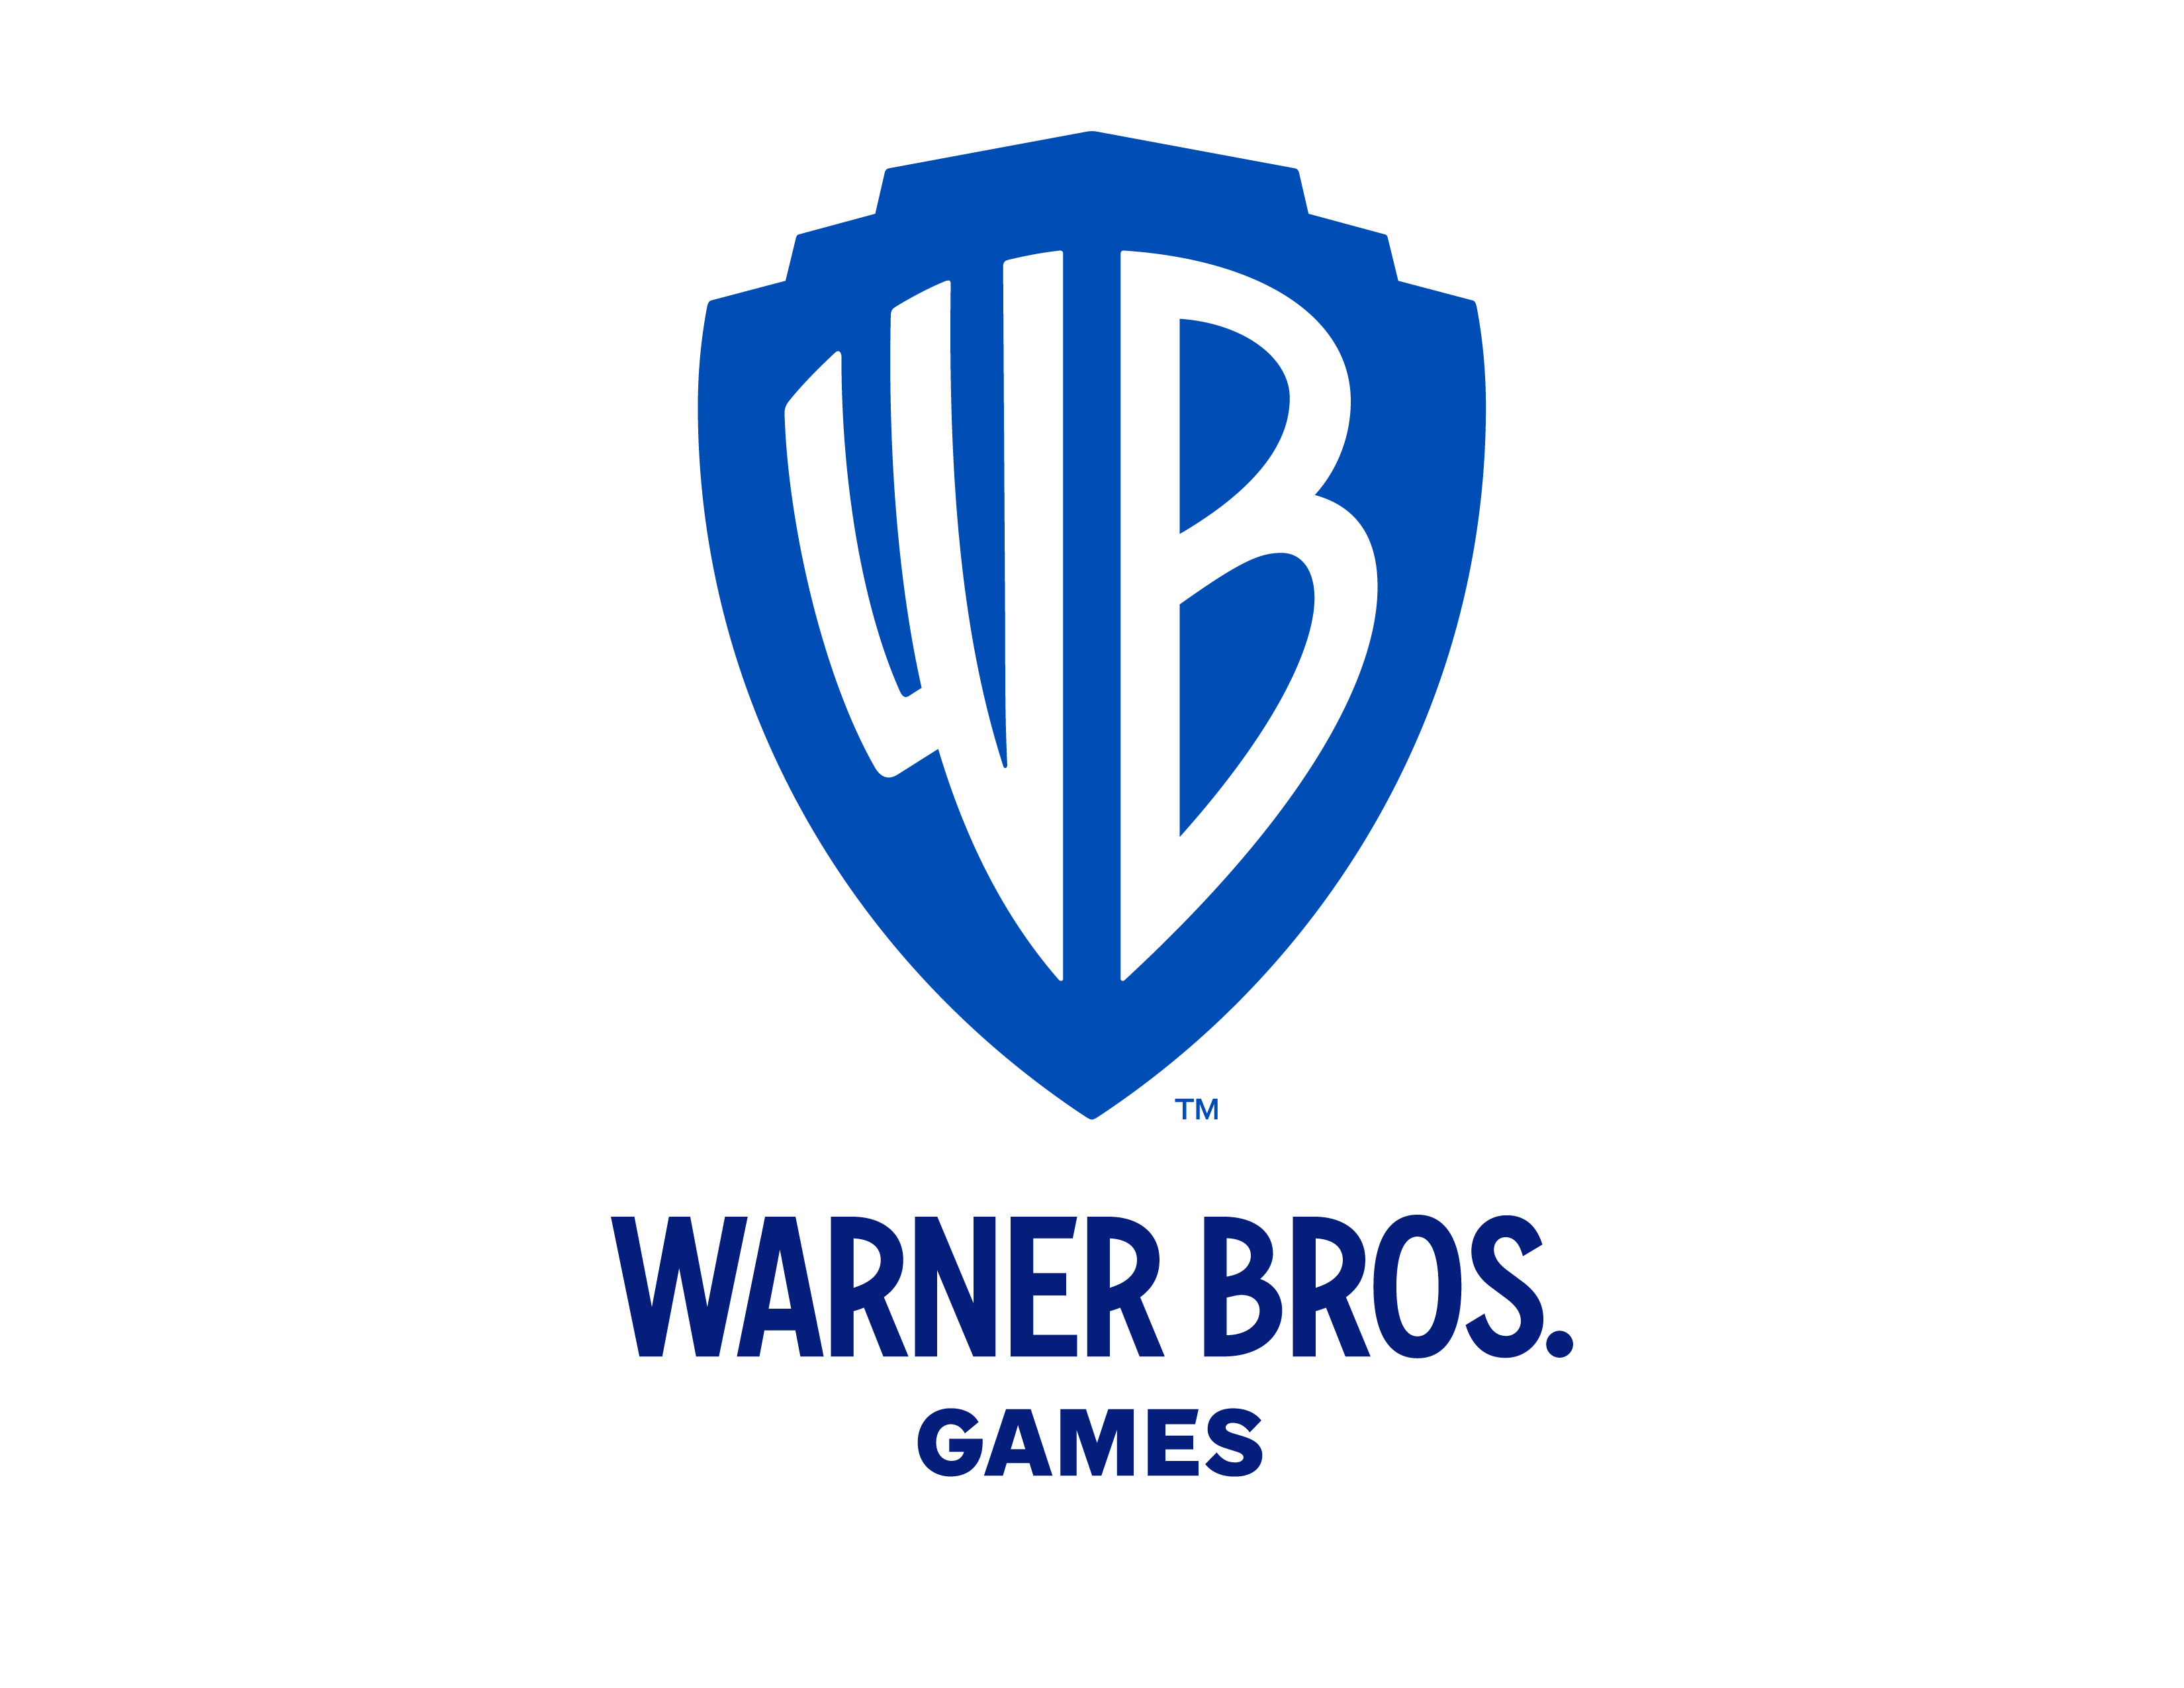 Imagens de Warner Bros Multiversus caem na internet